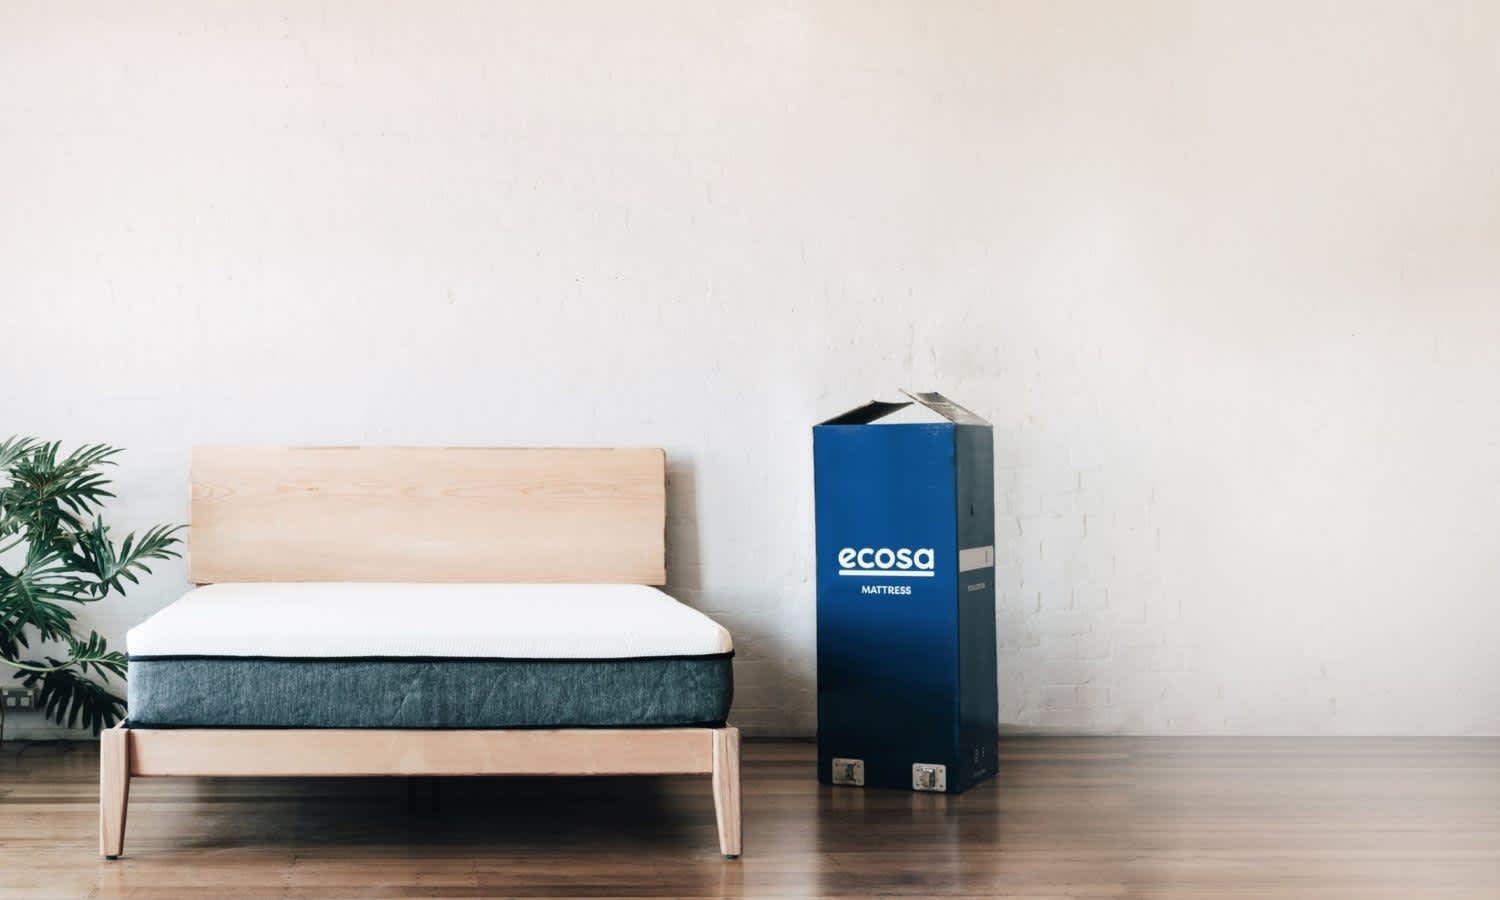 Ecosa mattress